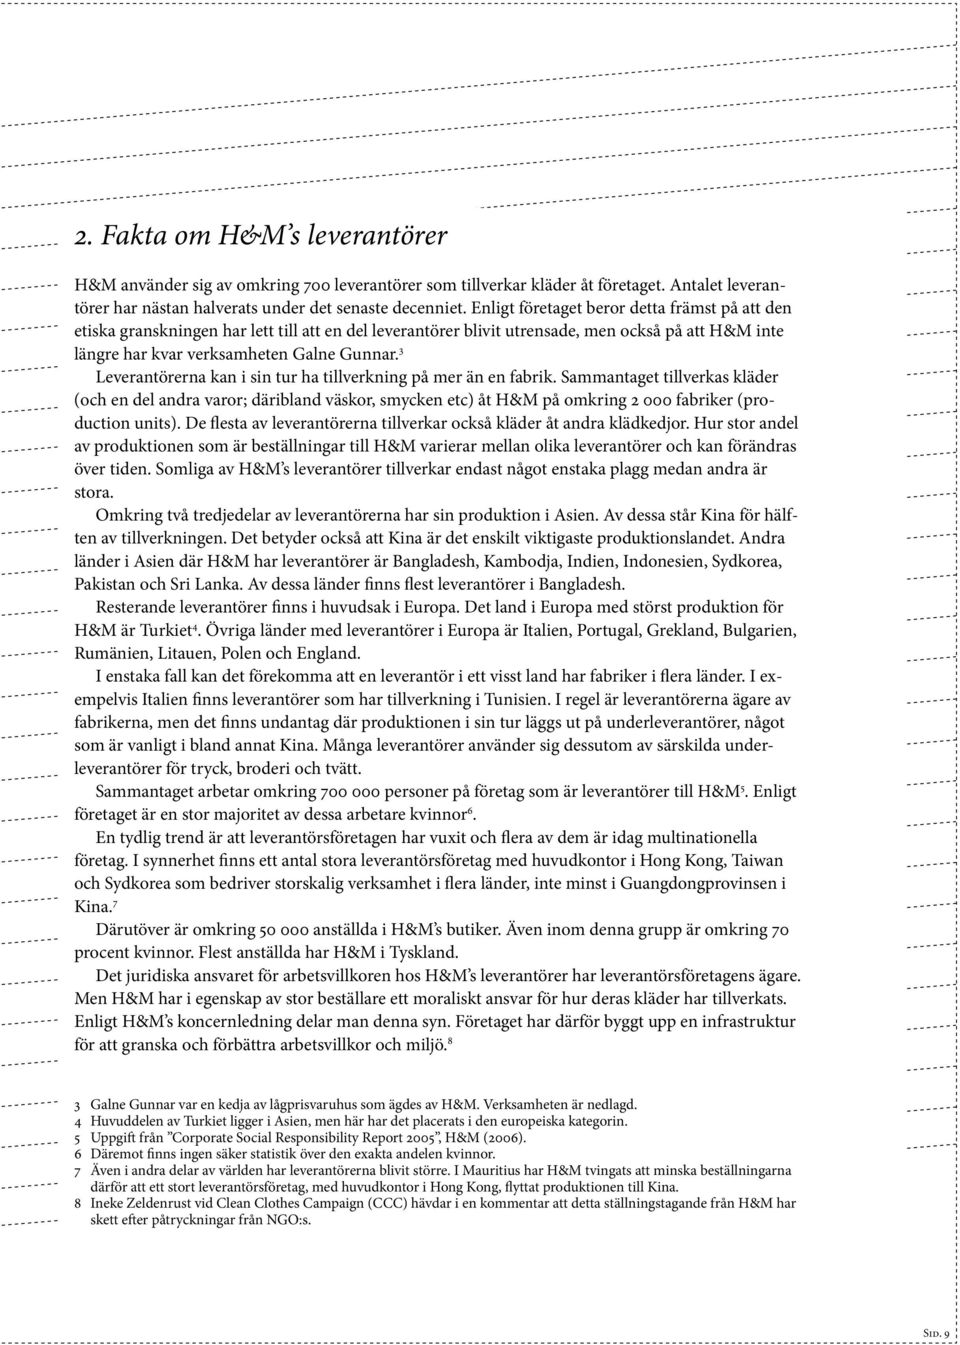 RAPPORT #1: HENNES & MAURITZ Infrastruktur för granskning och förbättring  av arbetsvillkoren i leverantörsfabrikerna - PDF Gratis nedladdning